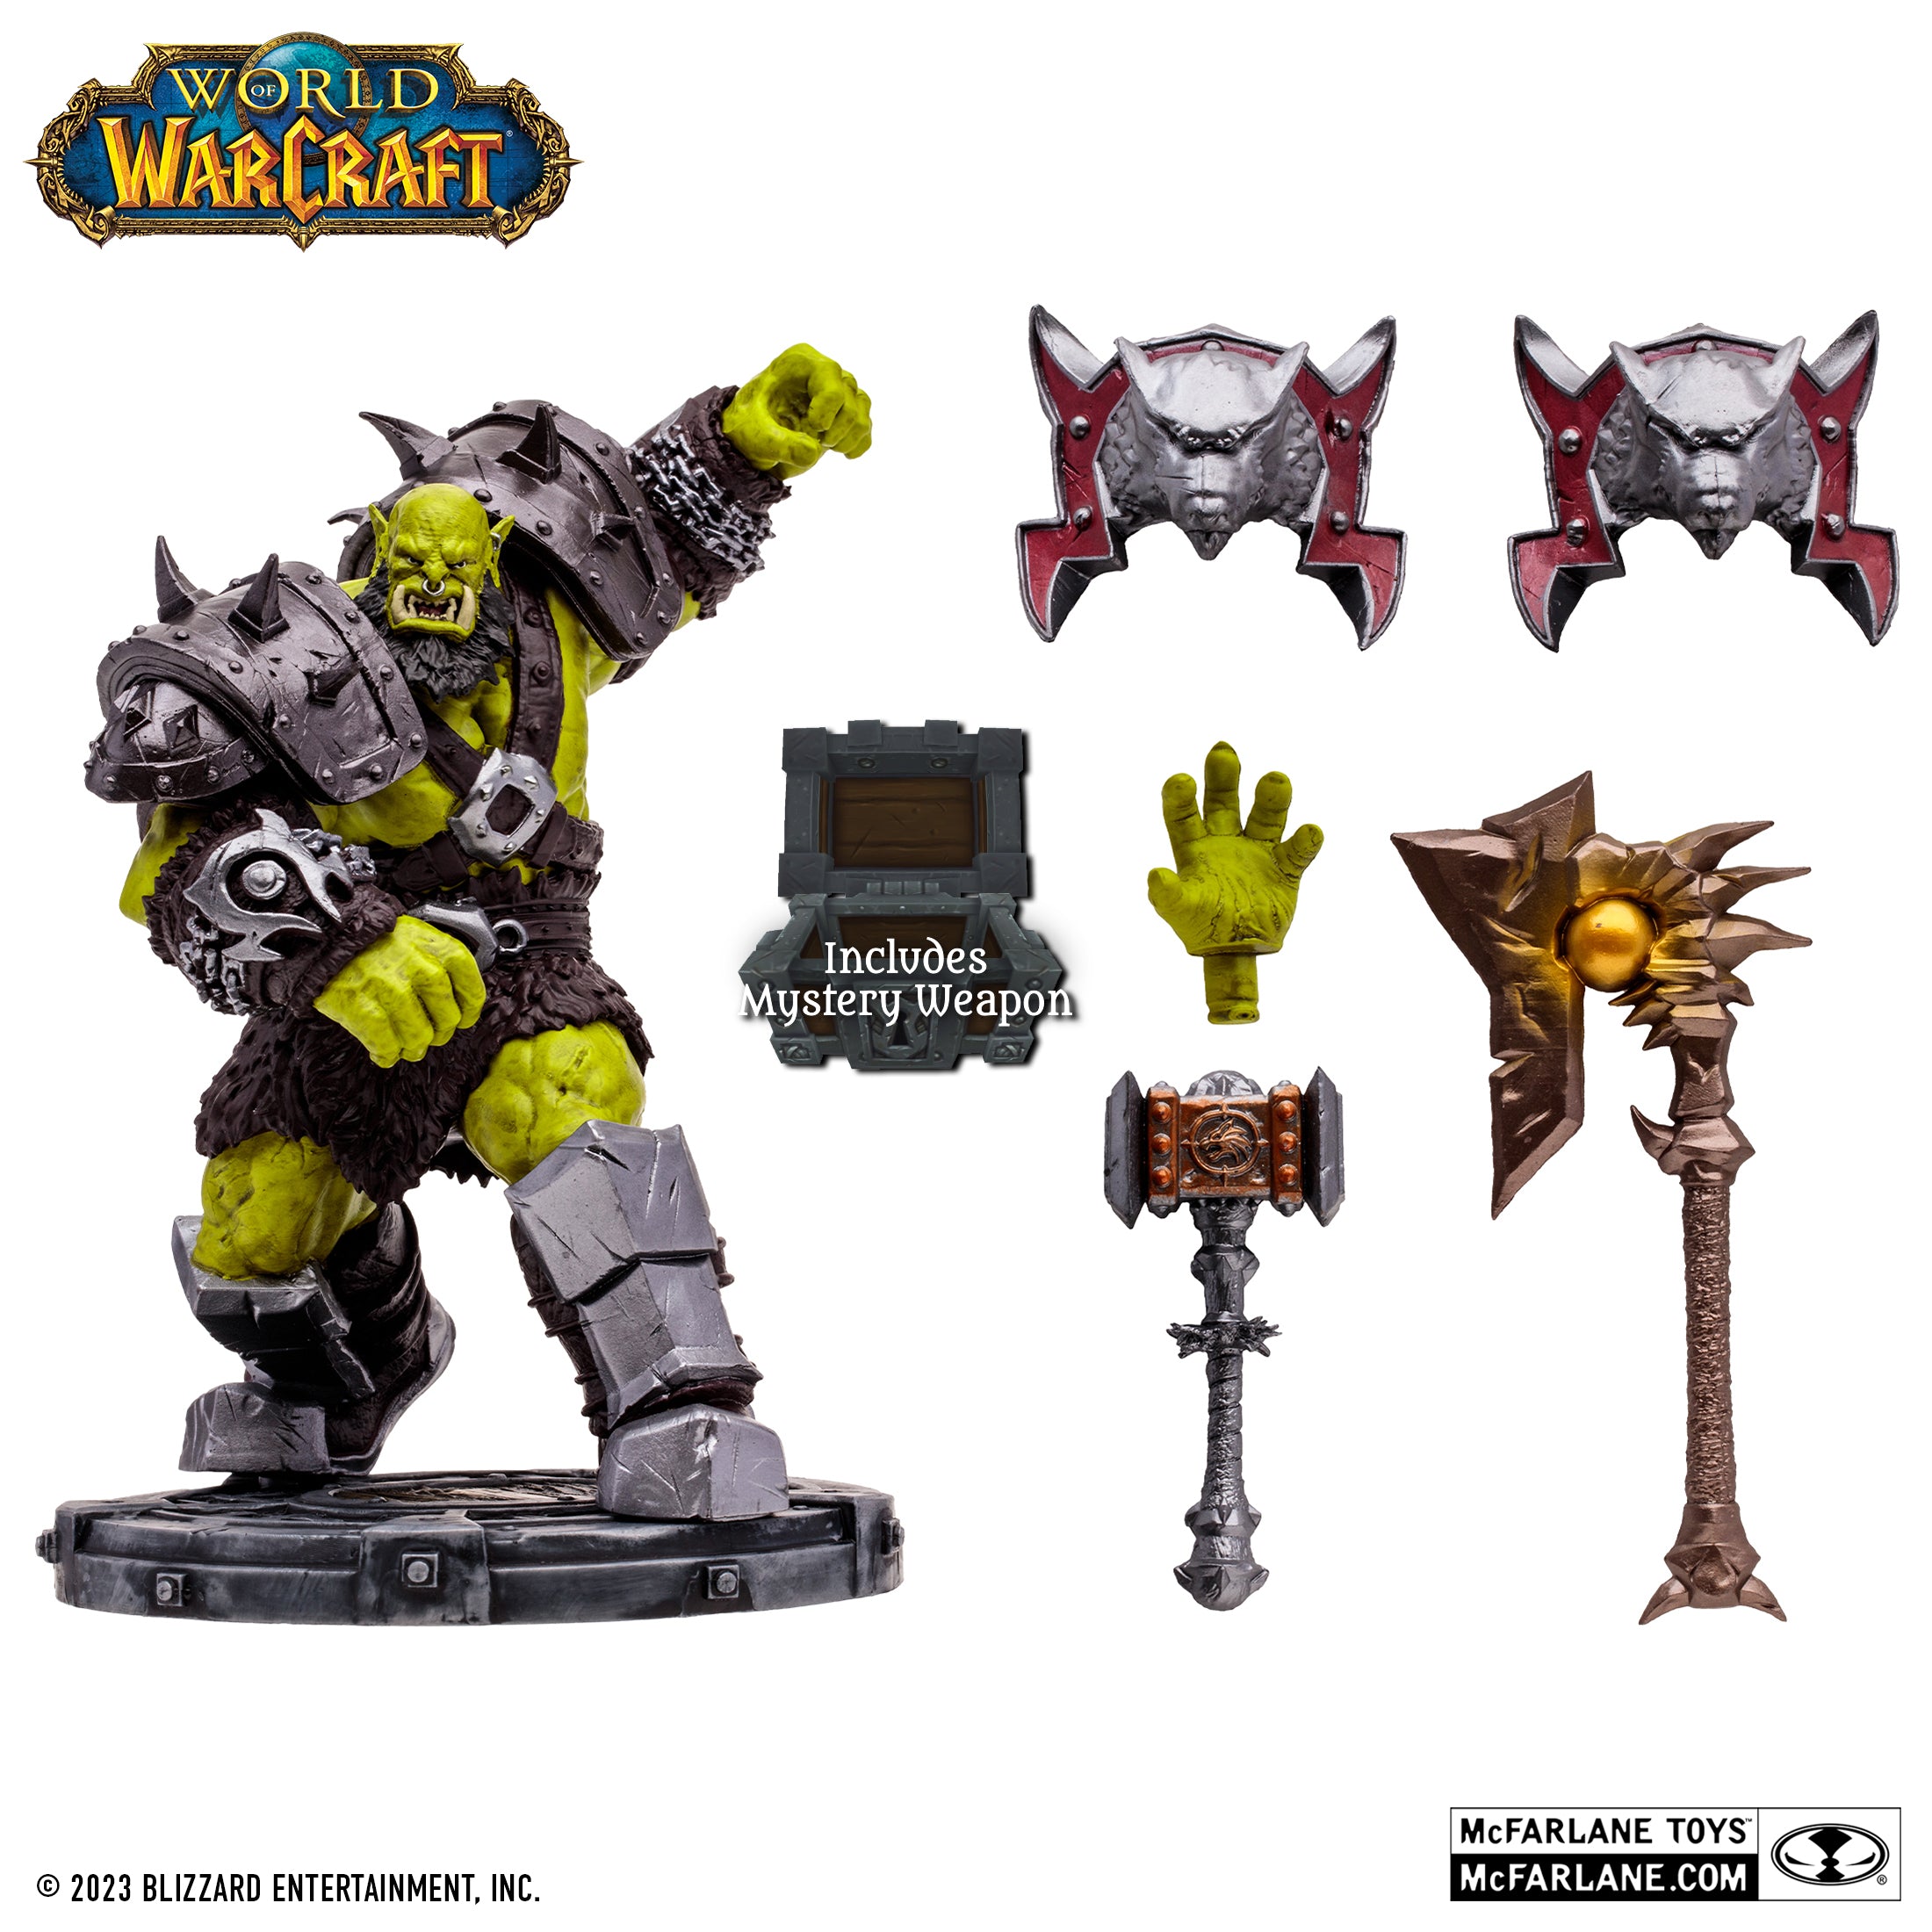 McFarlane Estatua: World Of Warcraft - Orco Shaman Guerrero Rare Escala 1/12